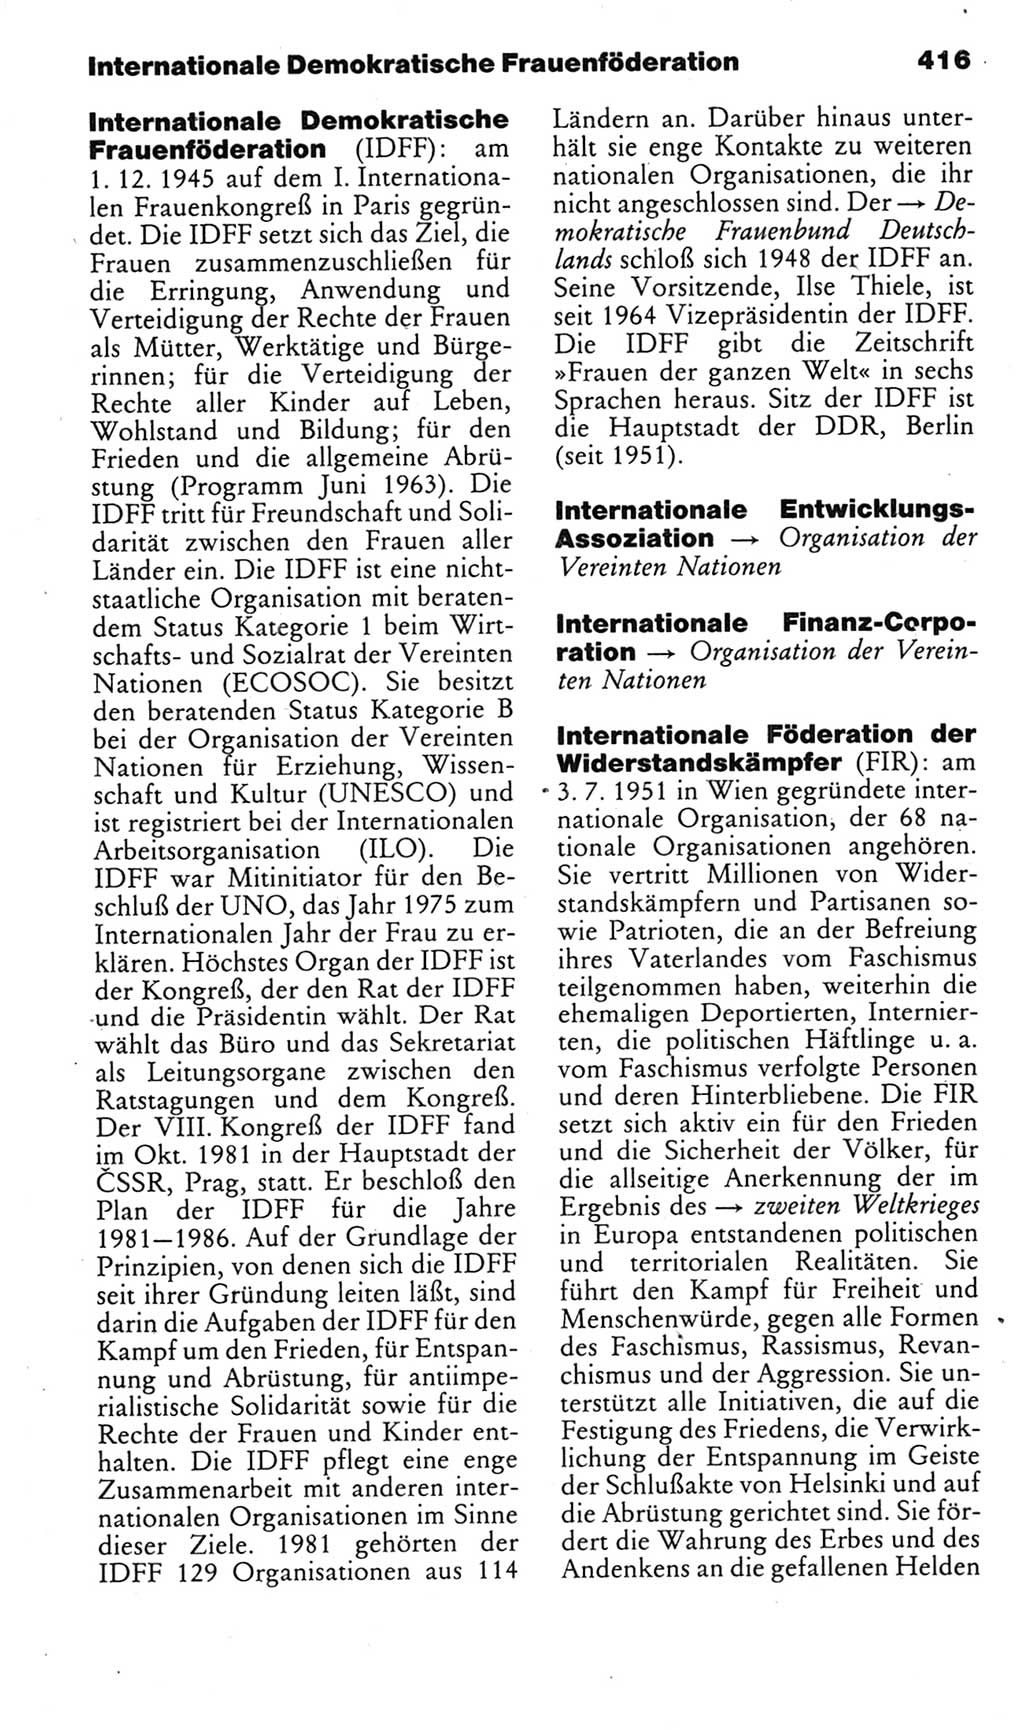 Kleines politisches Wörterbuch [Deutsche Demokratische Republik (DDR)] 1985, Seite 416 (Kl. pol. Wb. DDR 1985, S. 416)